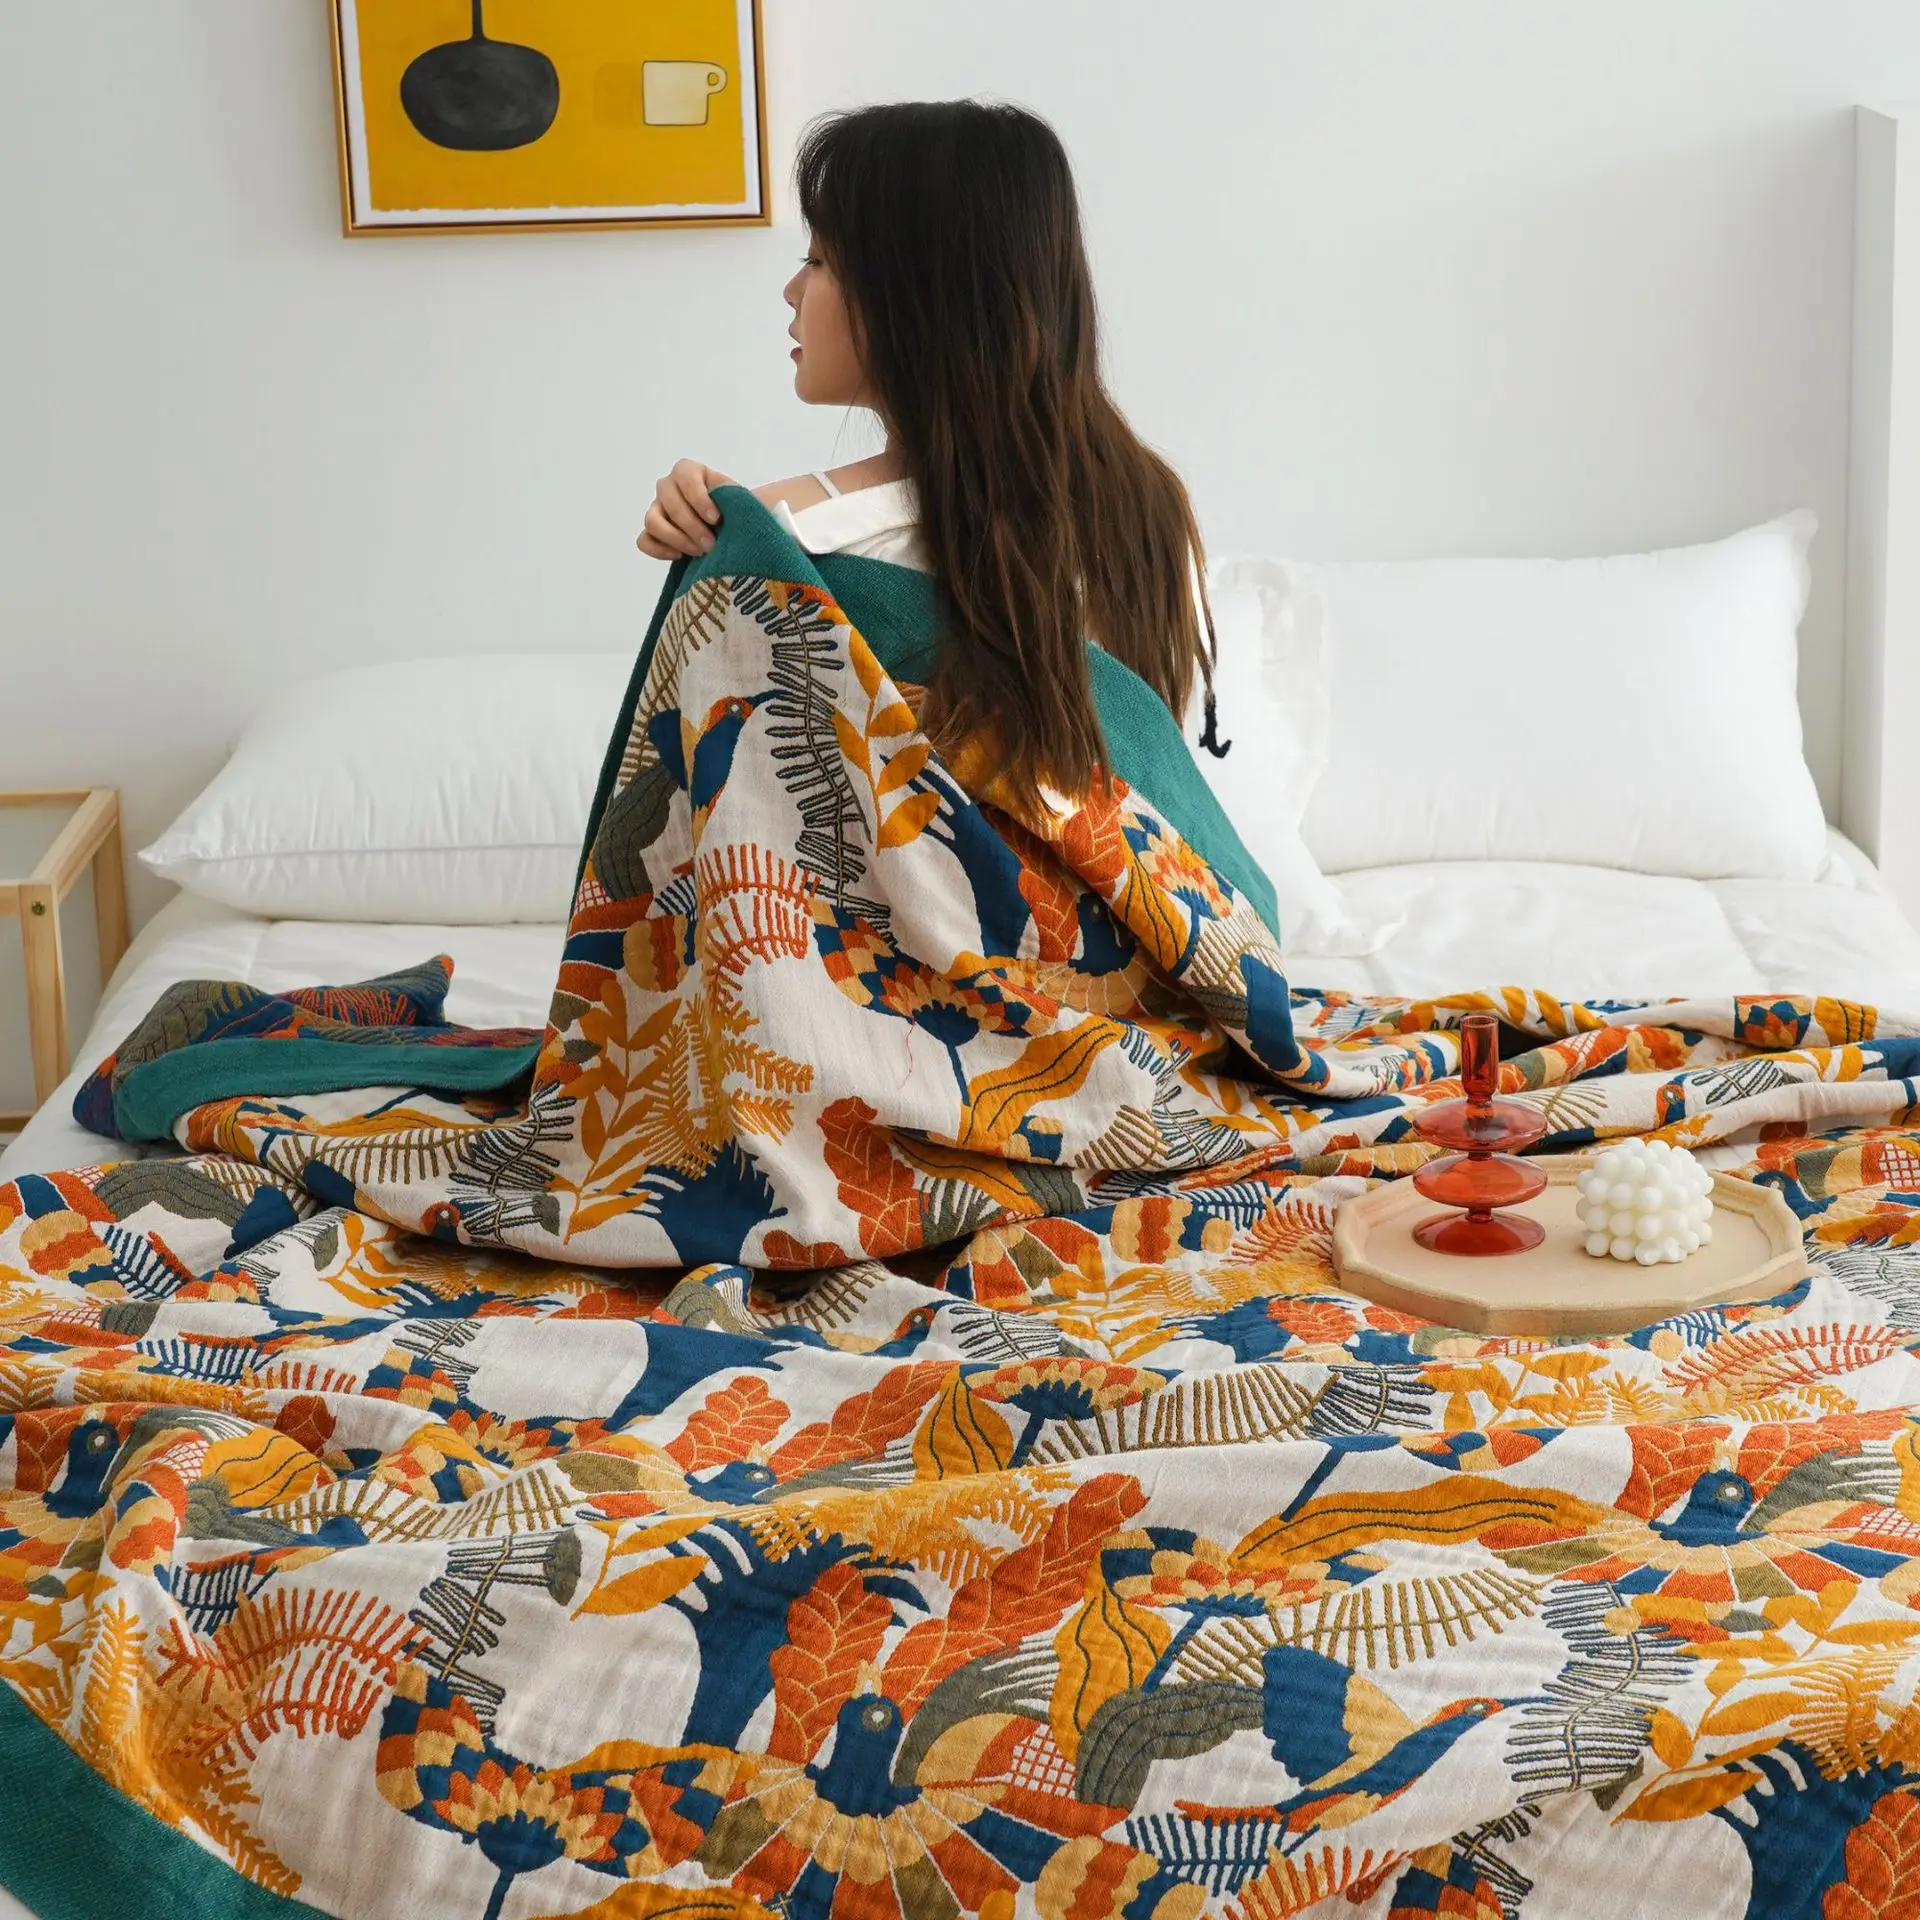 Скандинавские хлопчатобумажные одеяла, этническое одеяло для кондиционирования воздуха, простыня в стиле бохо, одеяла королевского размера, мягкое покрывало для отдыха, полотенце для дивана. 3